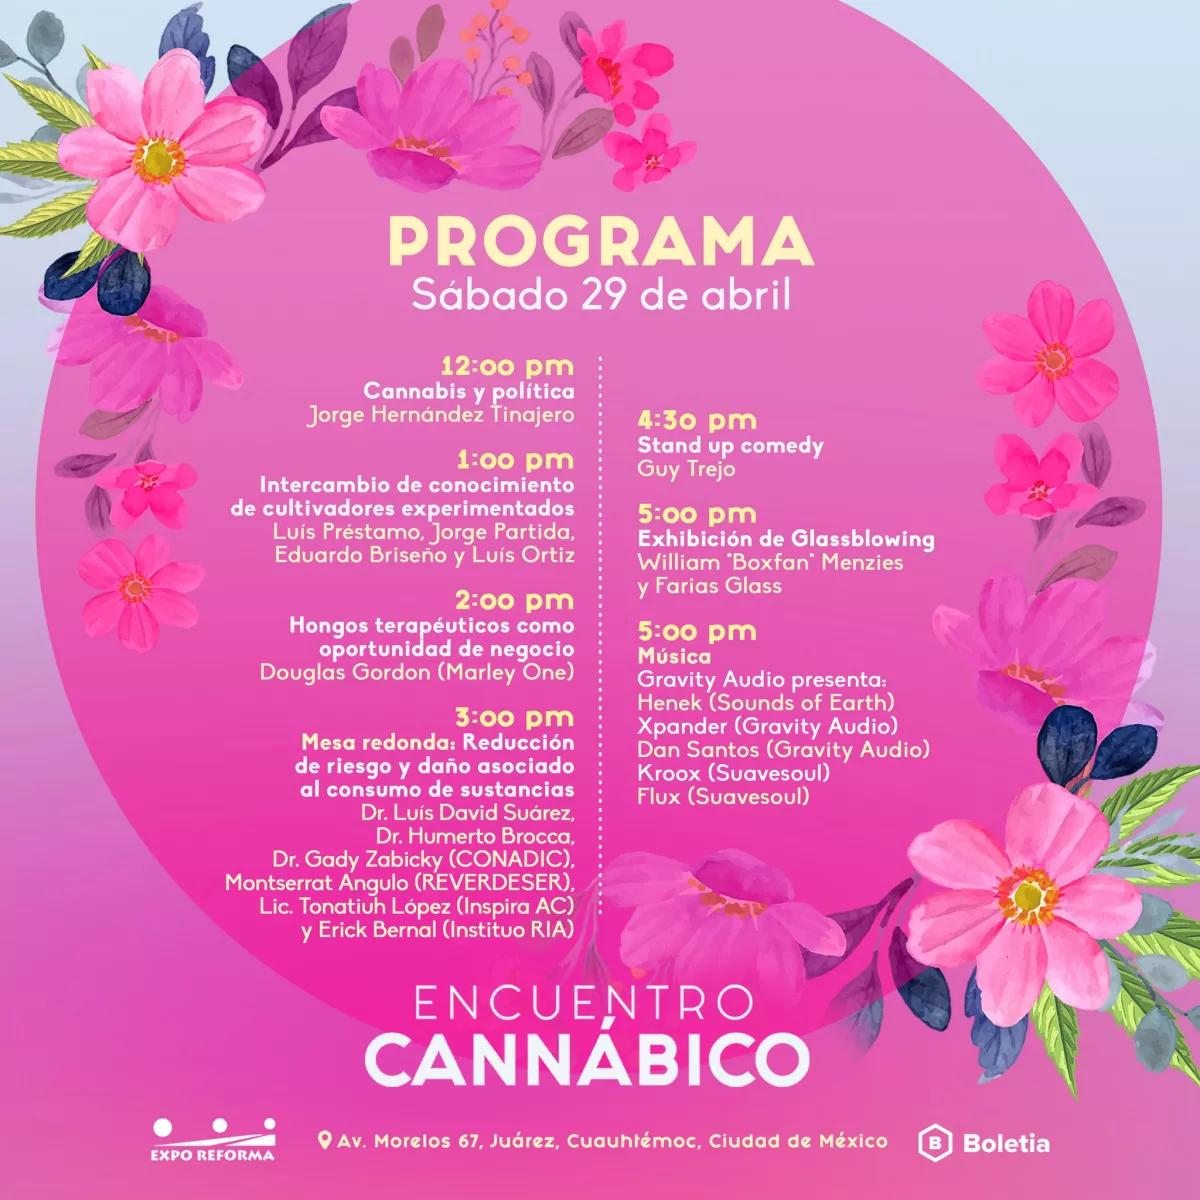 El ‘Encuentro cannábico’ vuelve a México este fin de semana